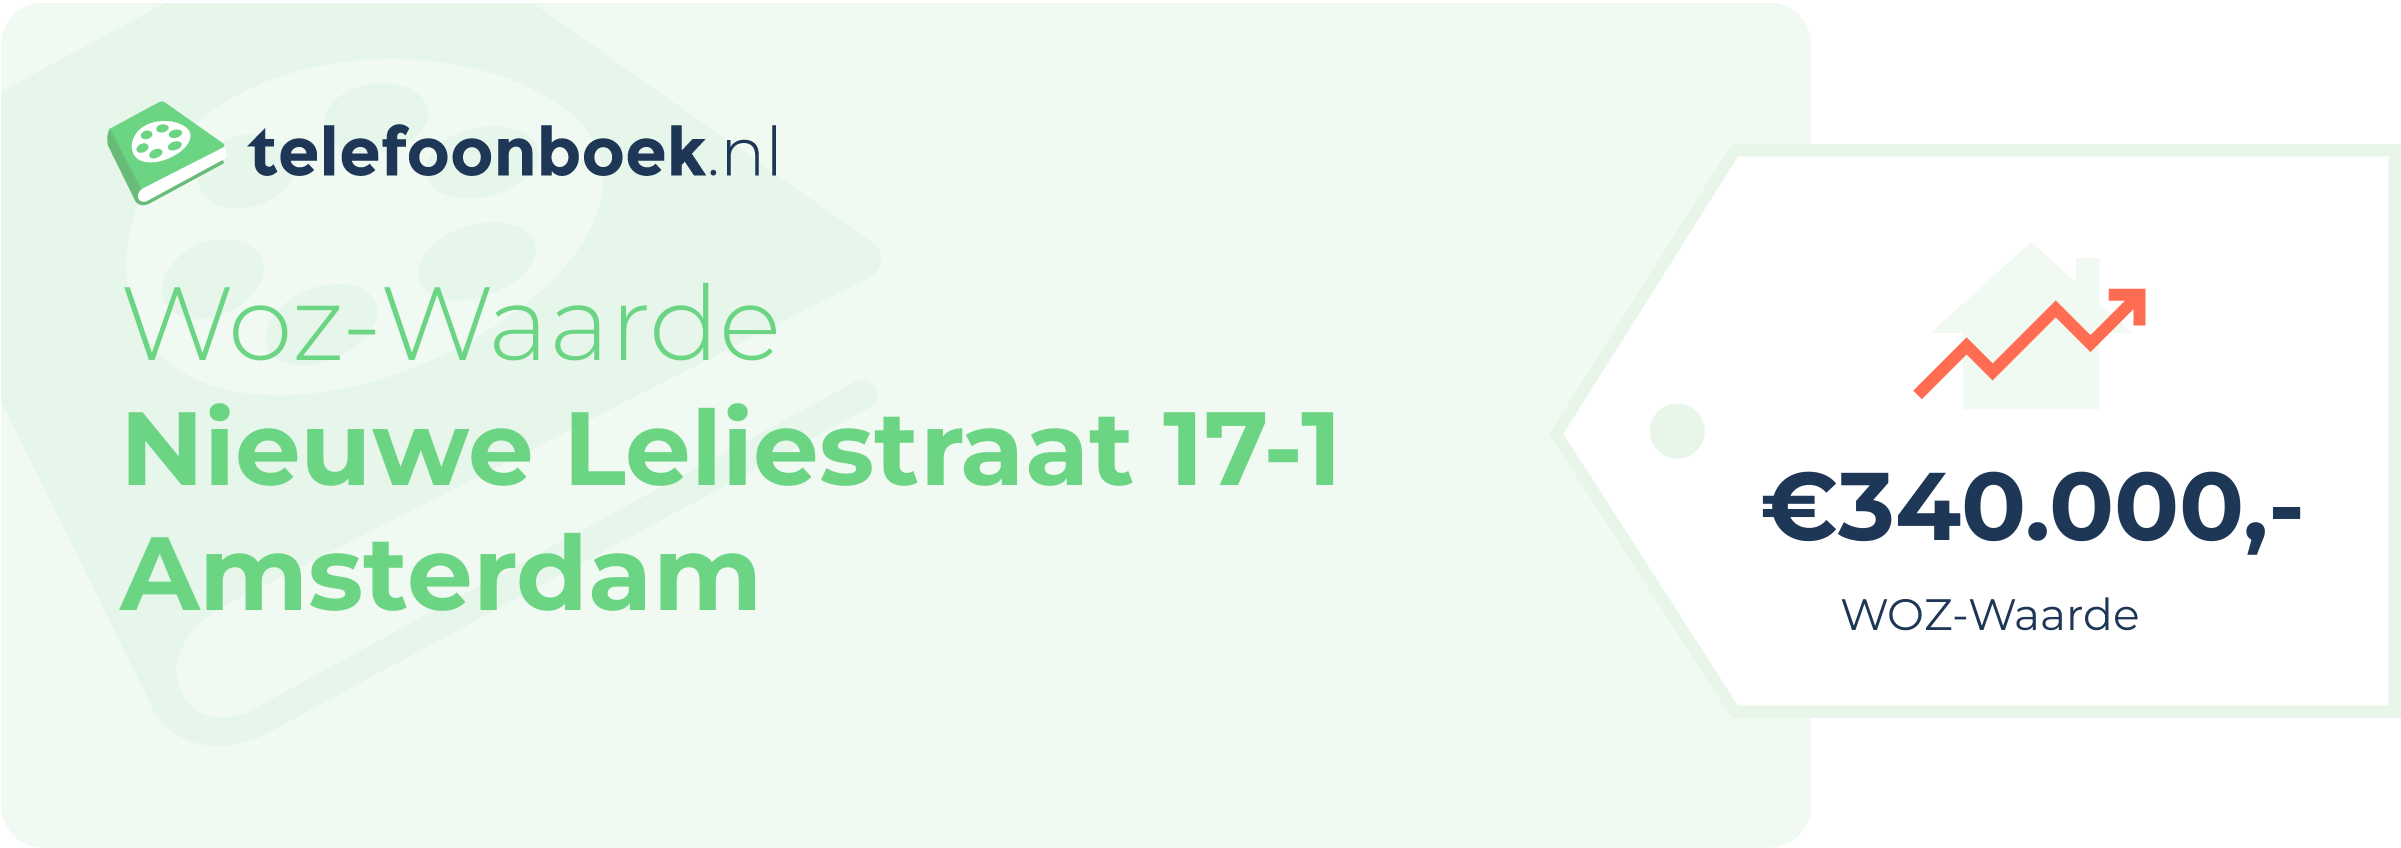 WOZ-waarde Nieuwe Leliestraat 17-1 Amsterdam